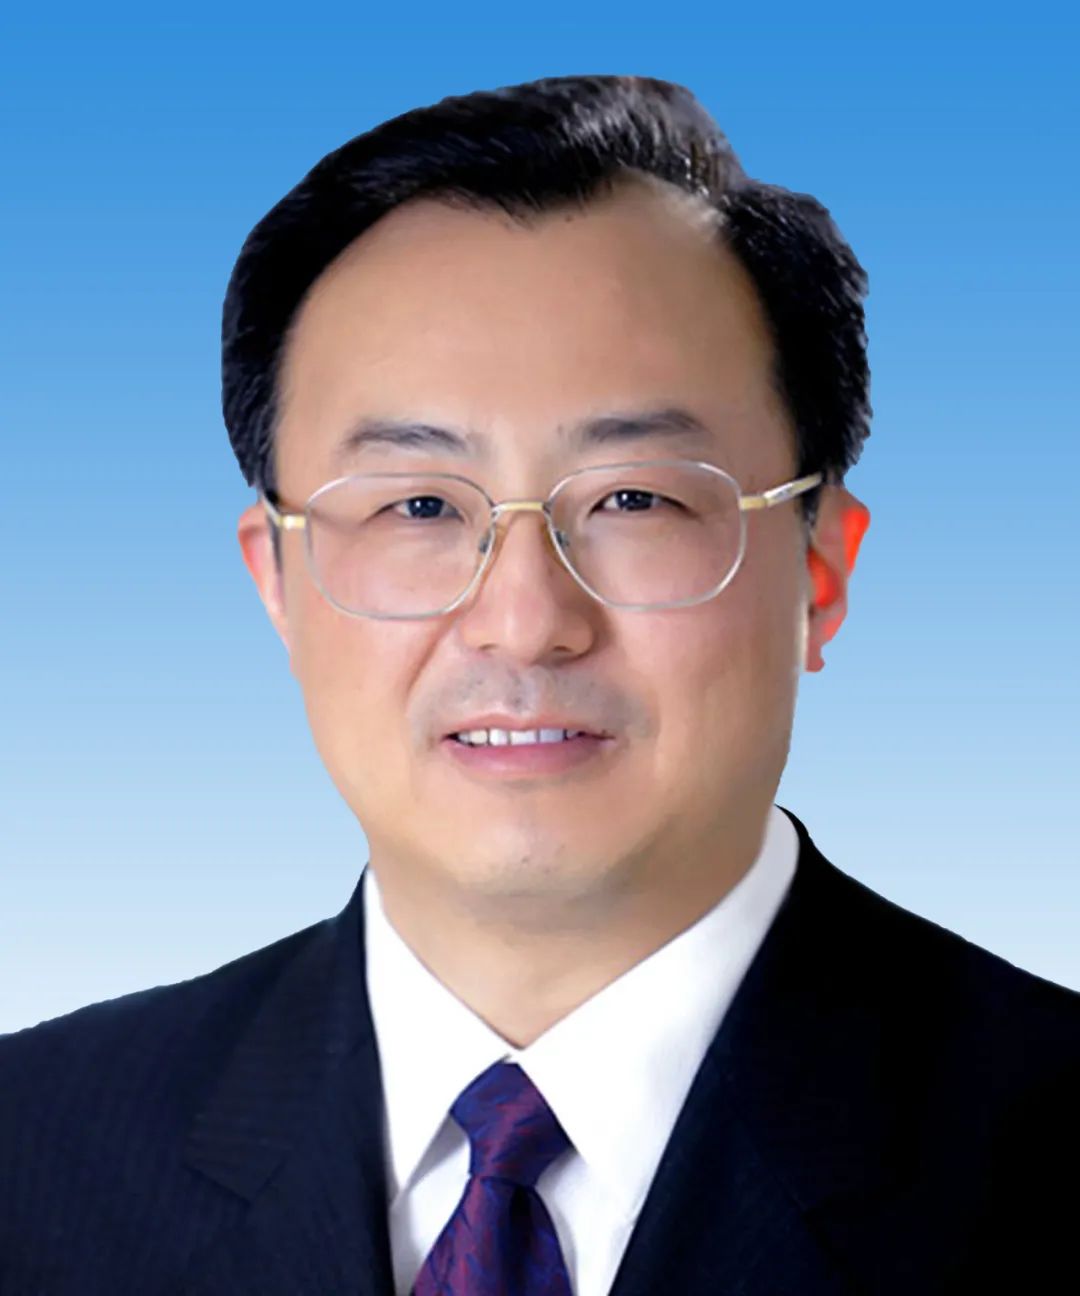 吴政隆当选江苏省第十三届人民代表大会常务委员会主任